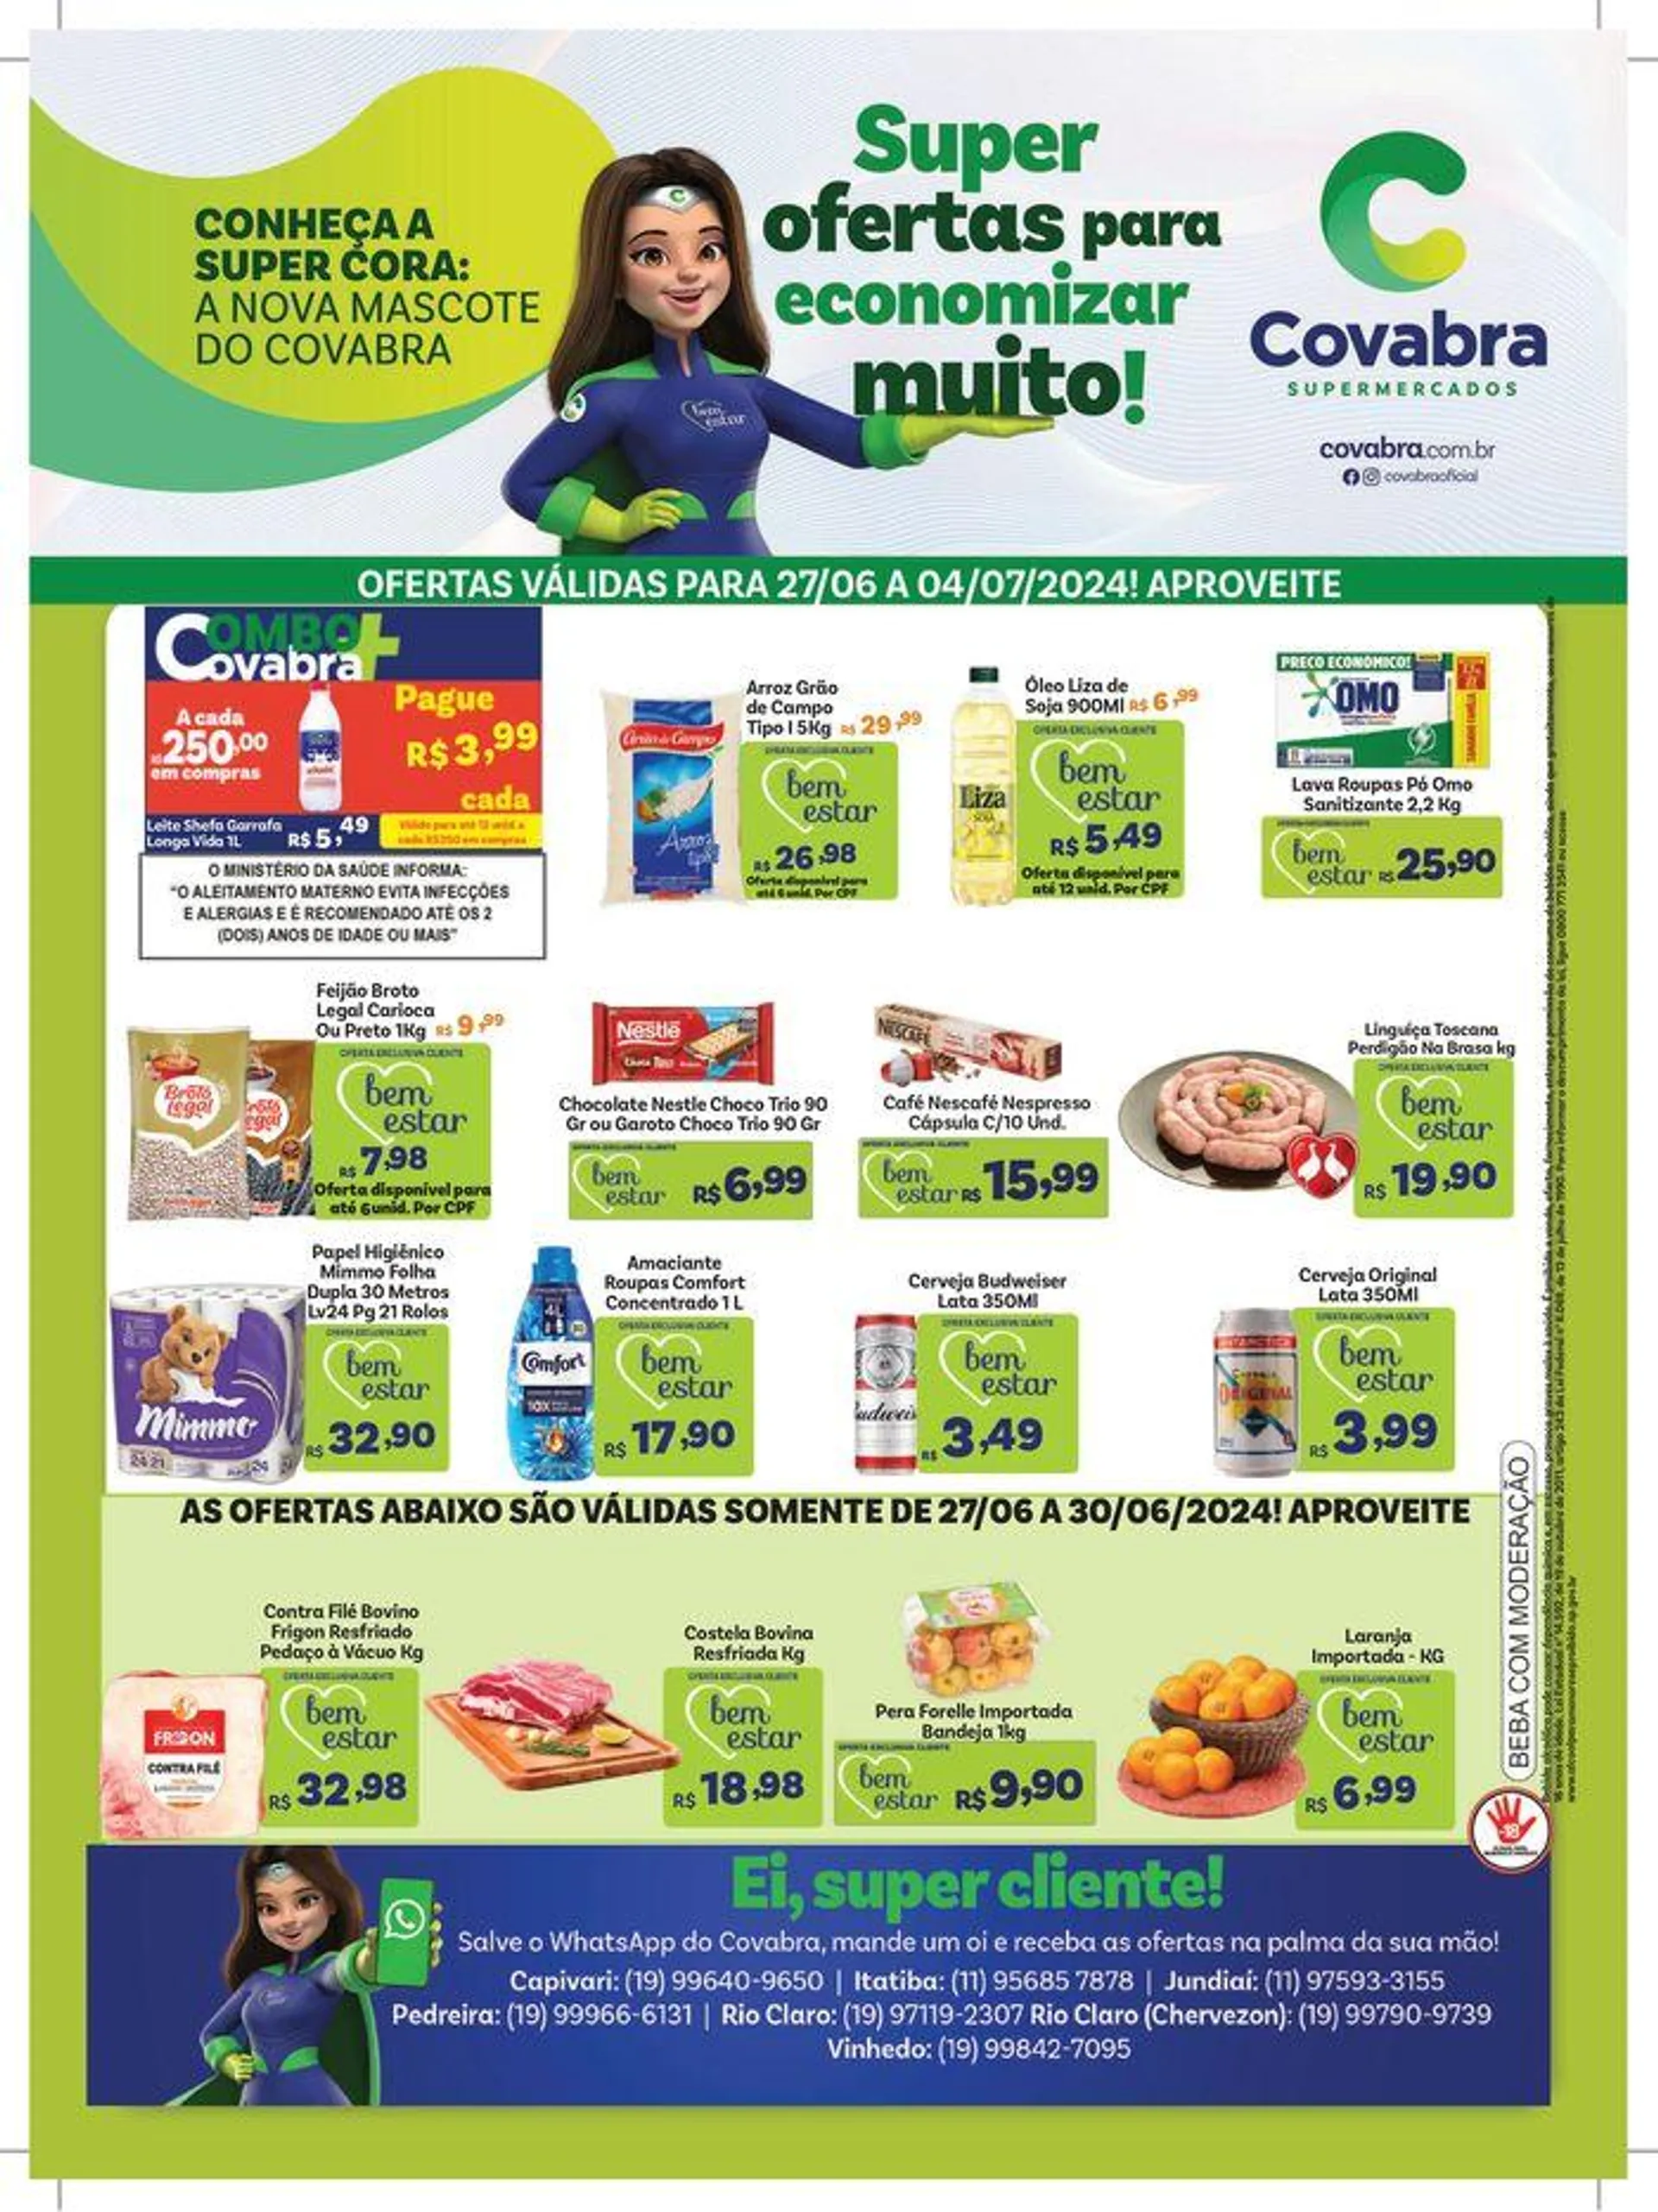 Ofertas Covabra Supermercados - 1